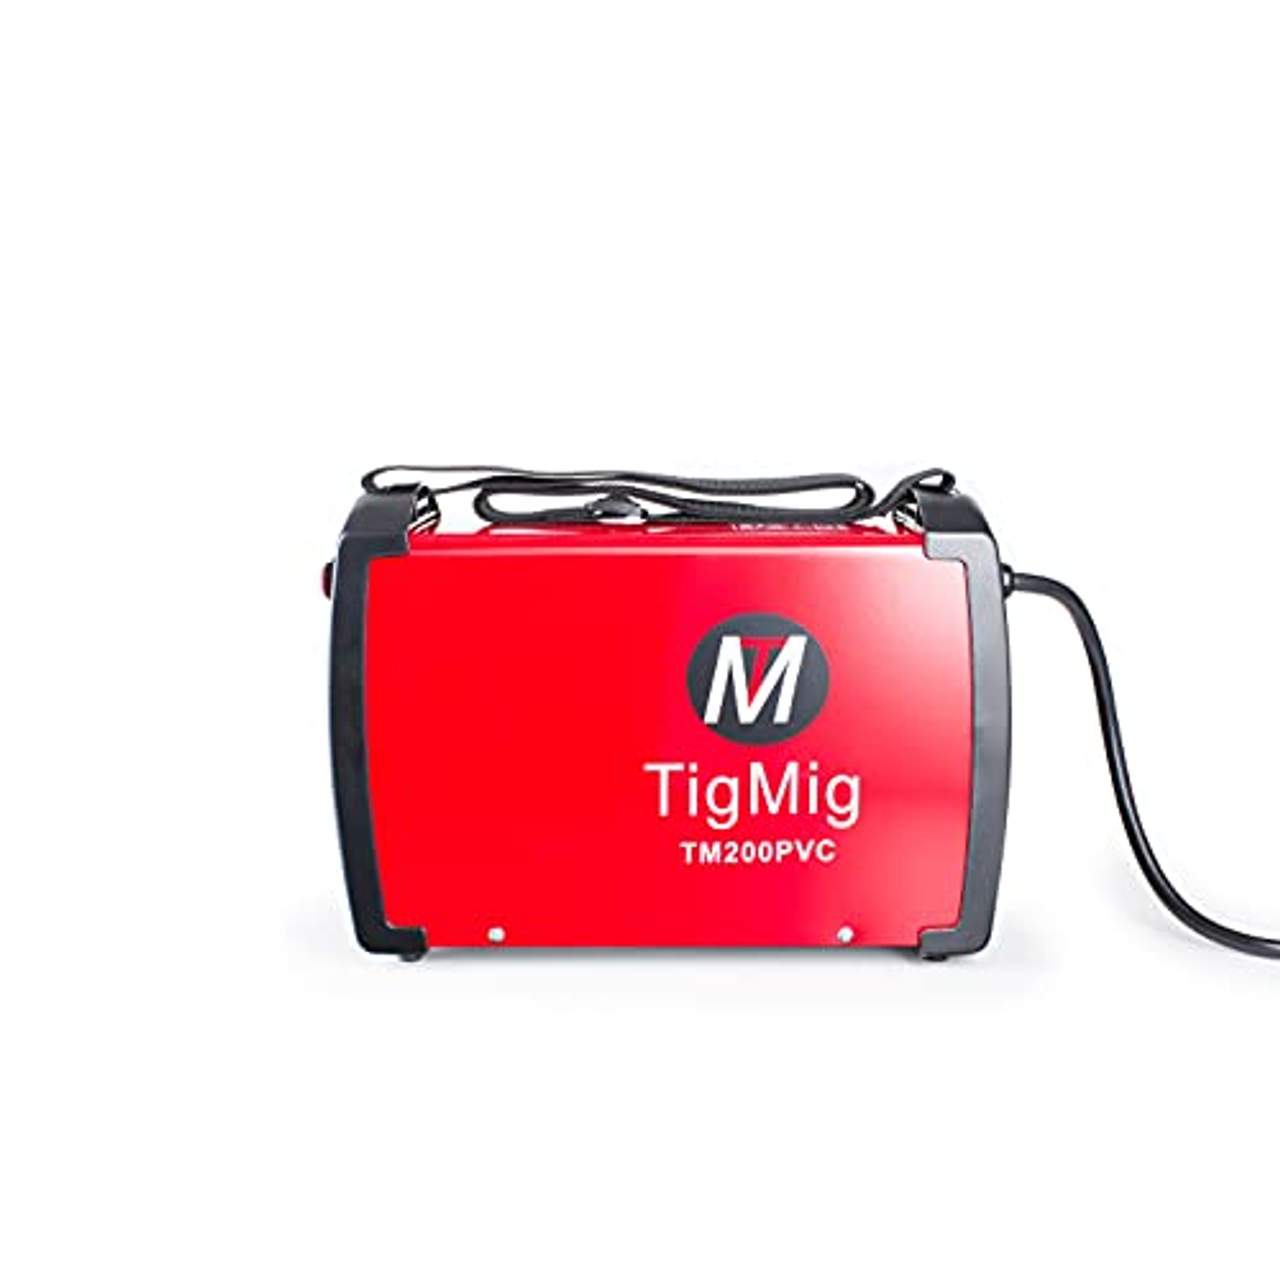 TIGMIG TM 200 PVC